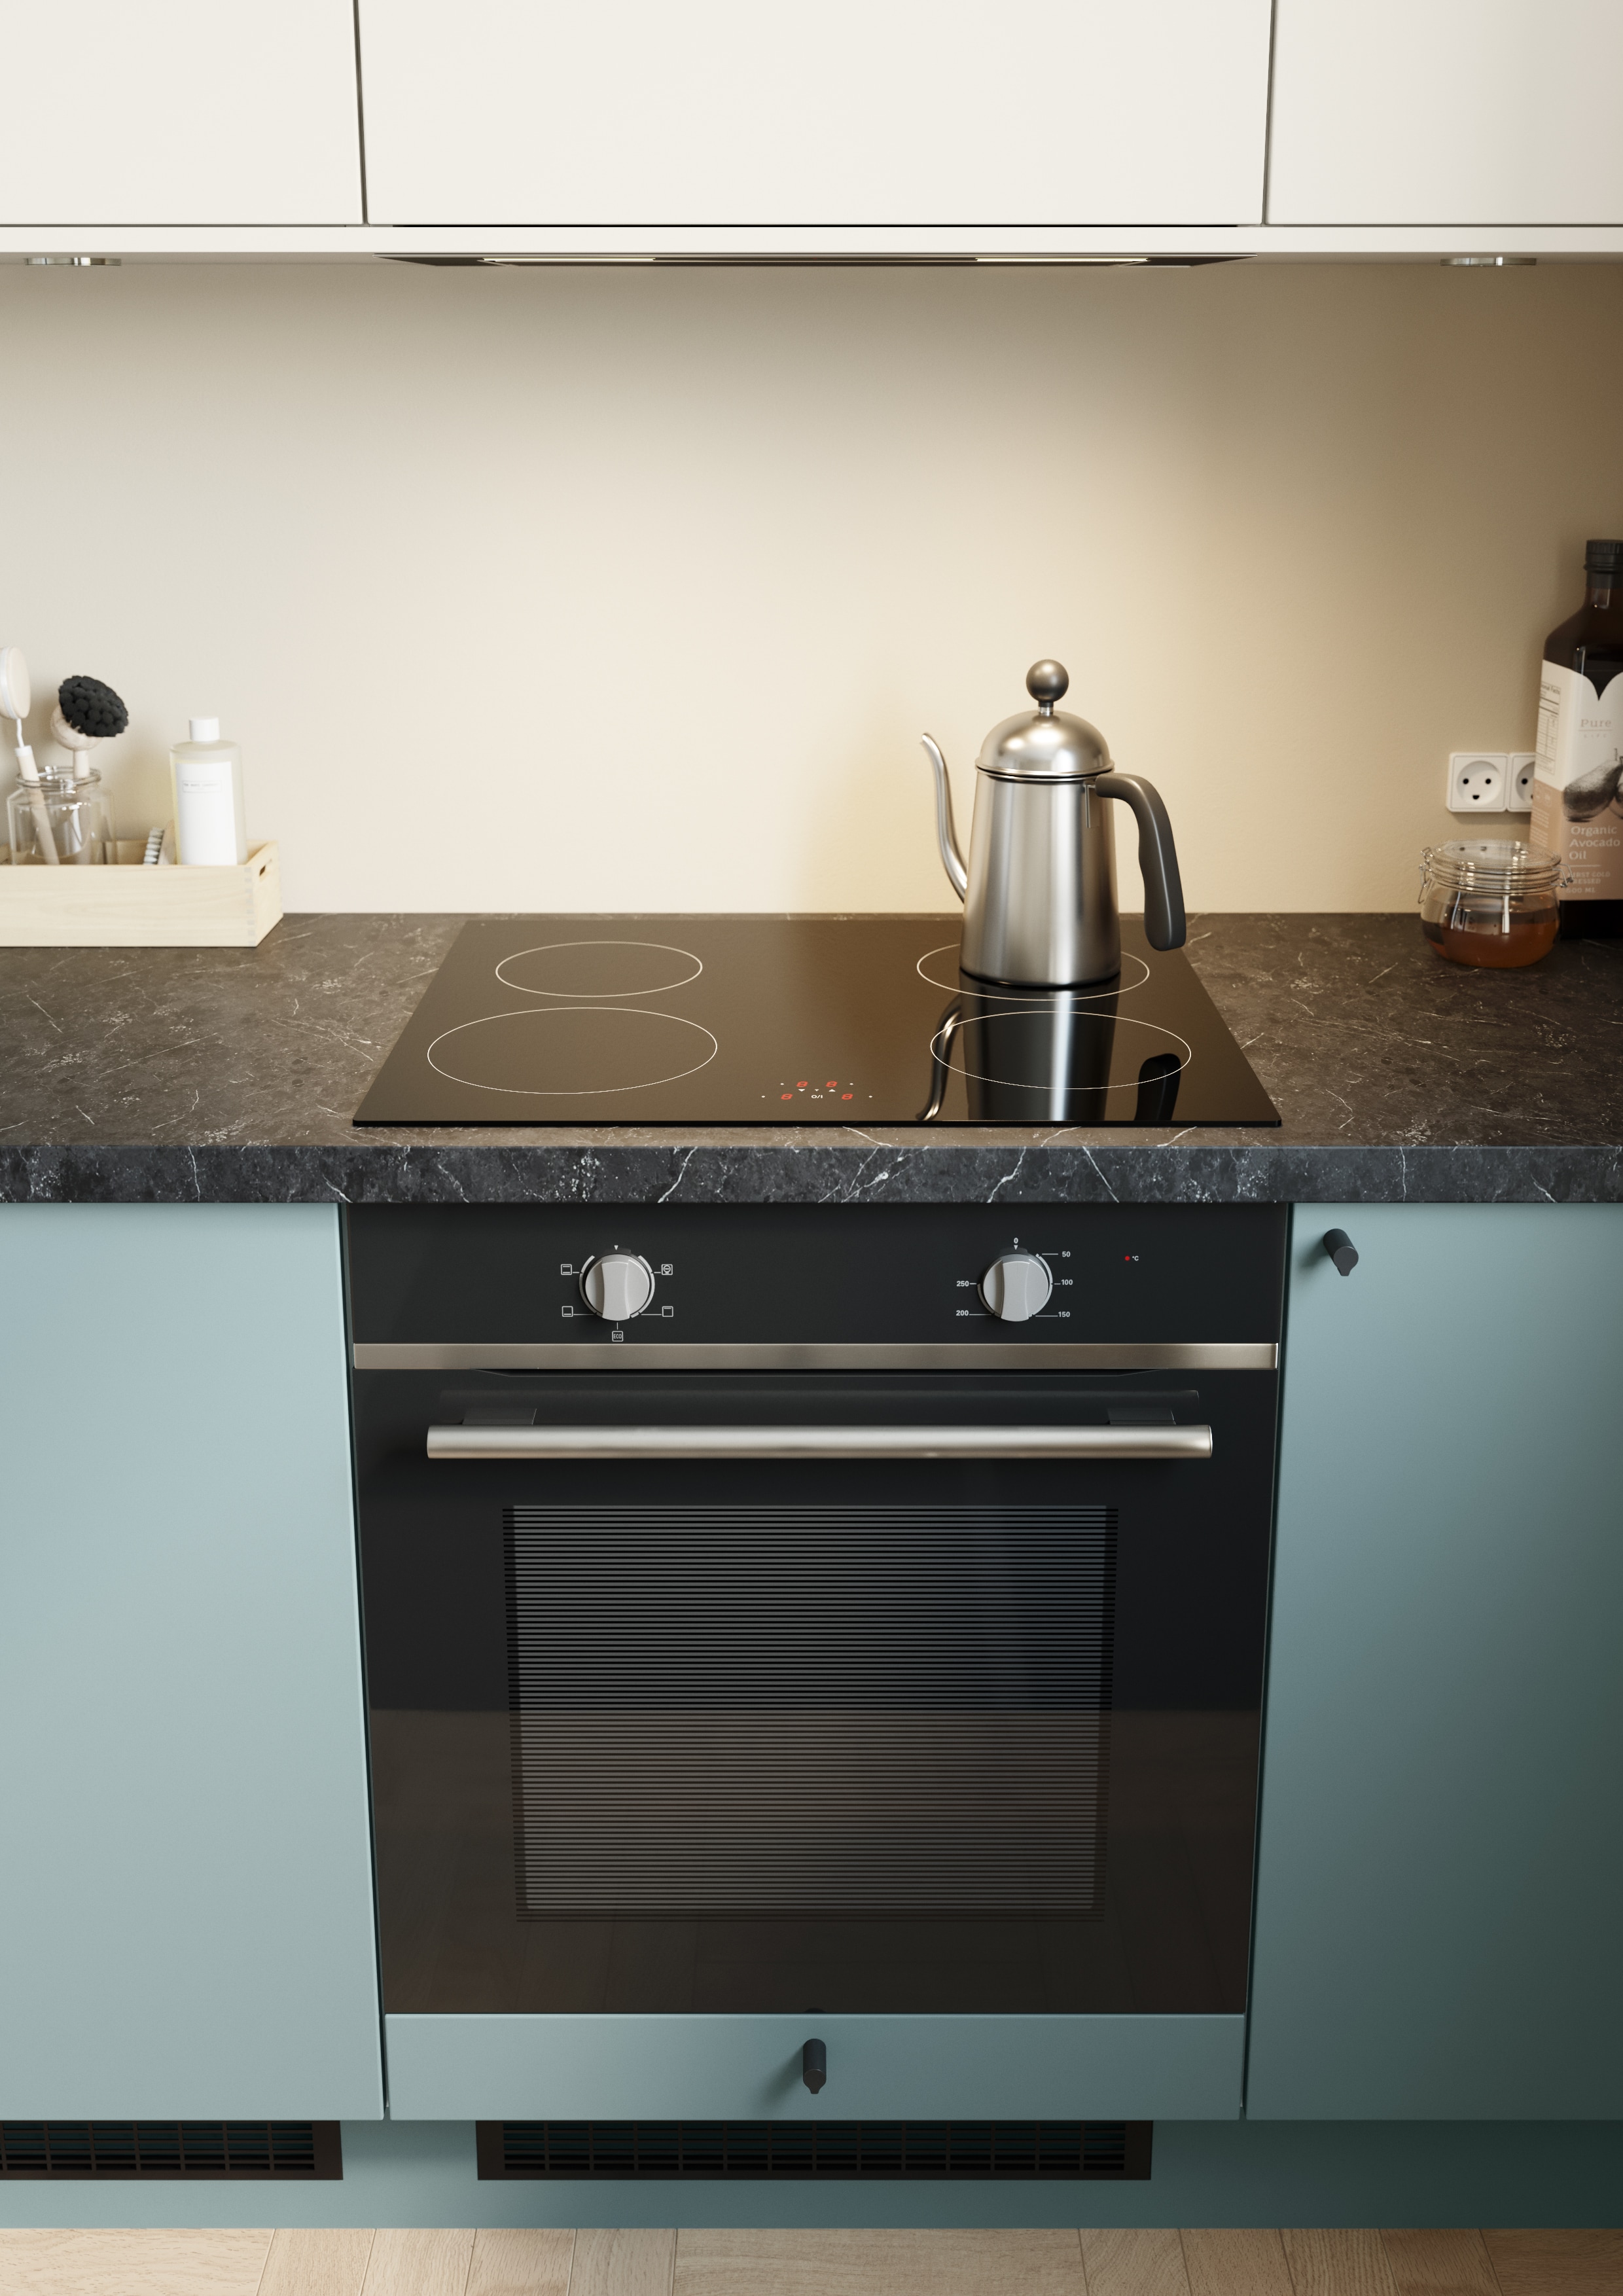 Epoq Trend Petrol og Warm White åpent kjøkken med integrert ovn og platetopp